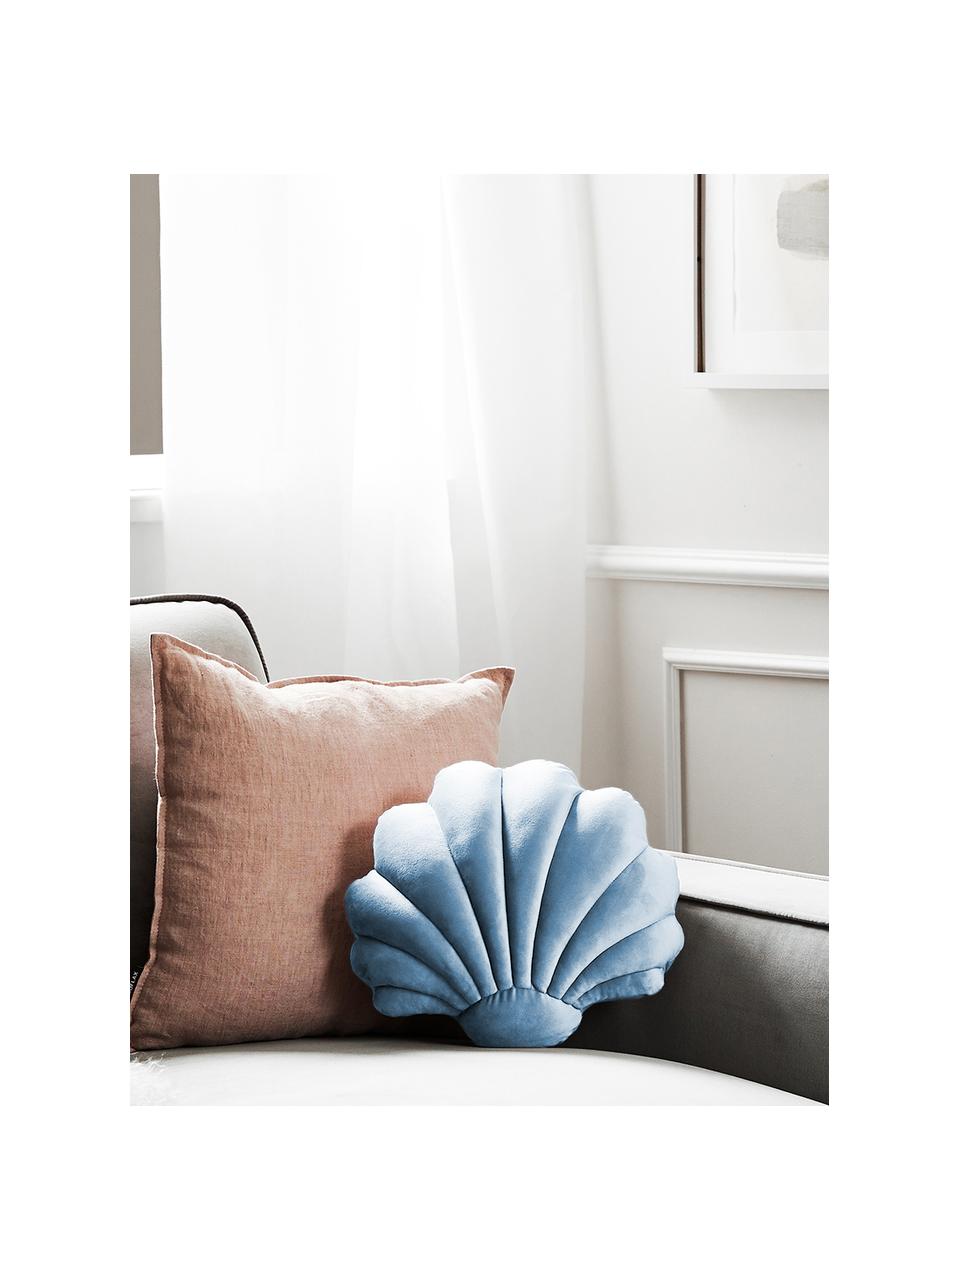 Fluwelen kussen Shell in schelp vorm, Lichtblauw, B 30 x L 28 cm